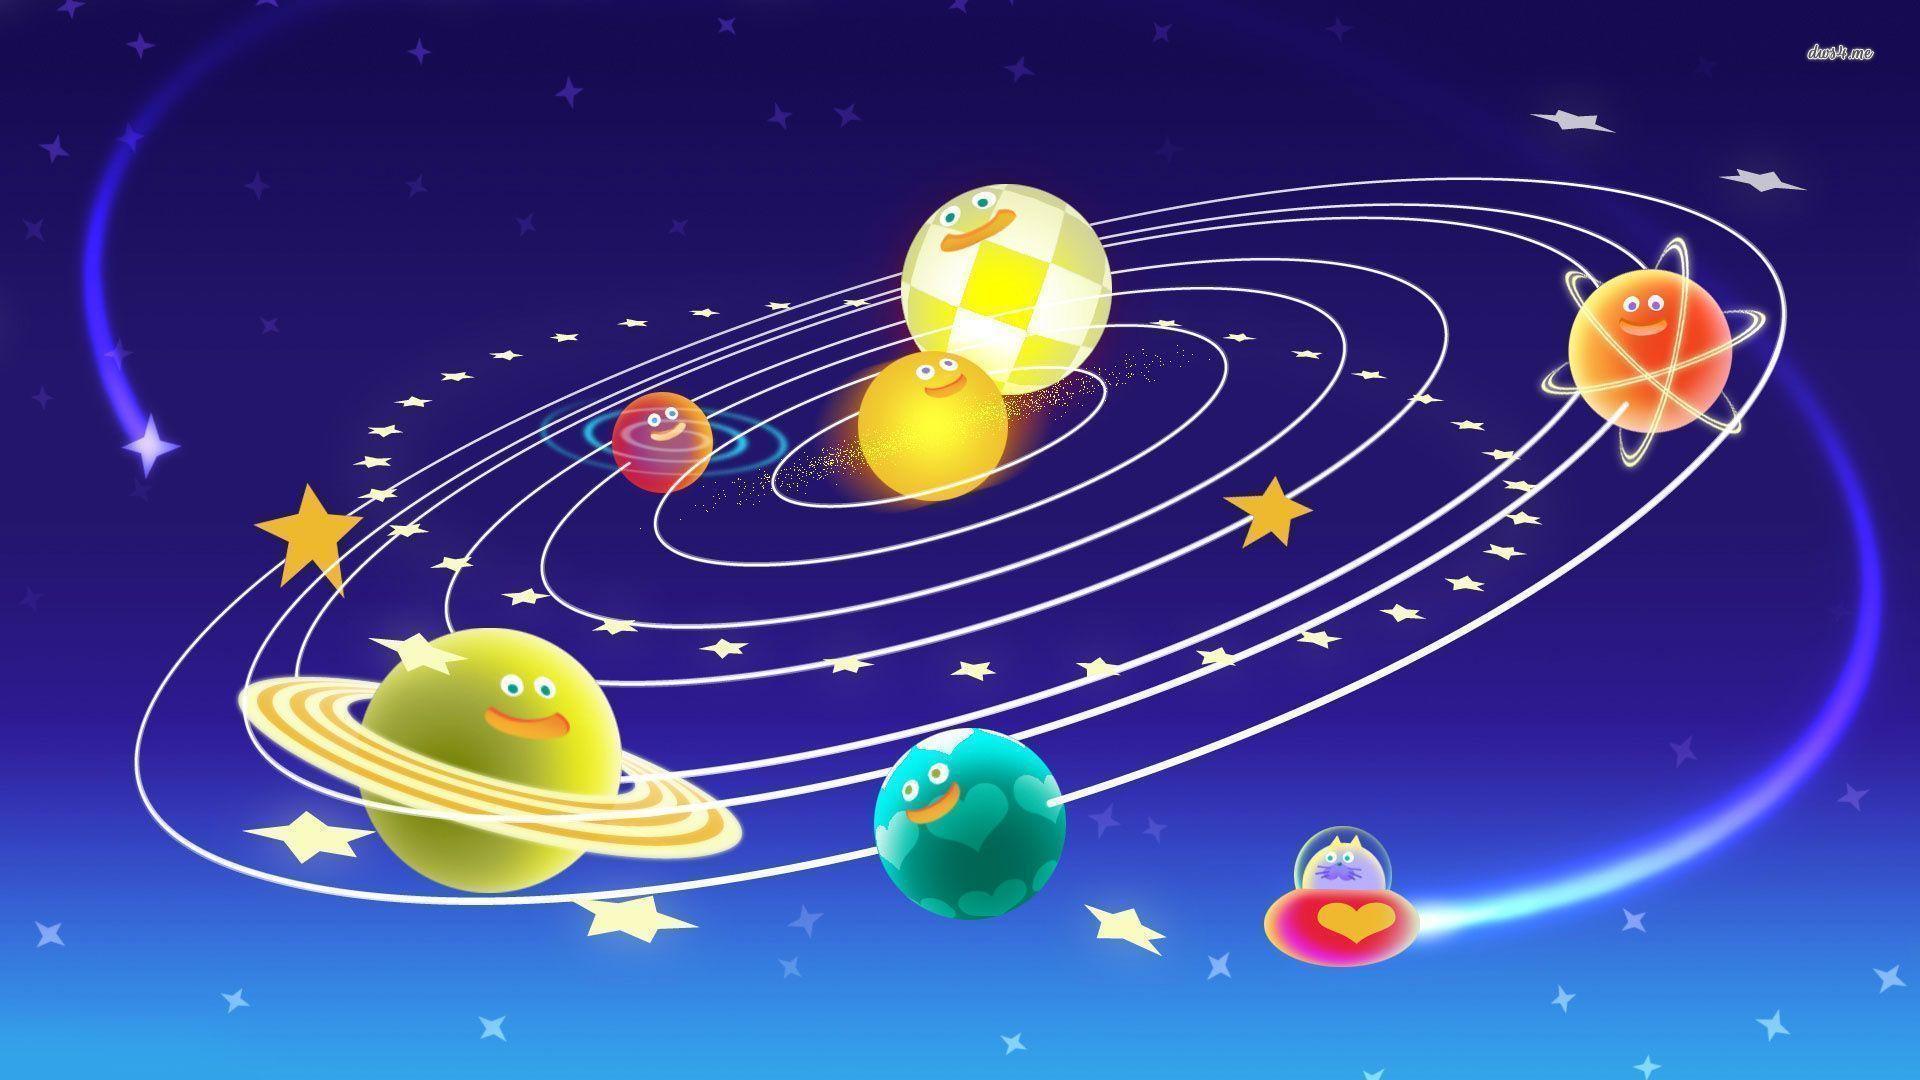 Cute Solar System wallpaper Art wallpaper